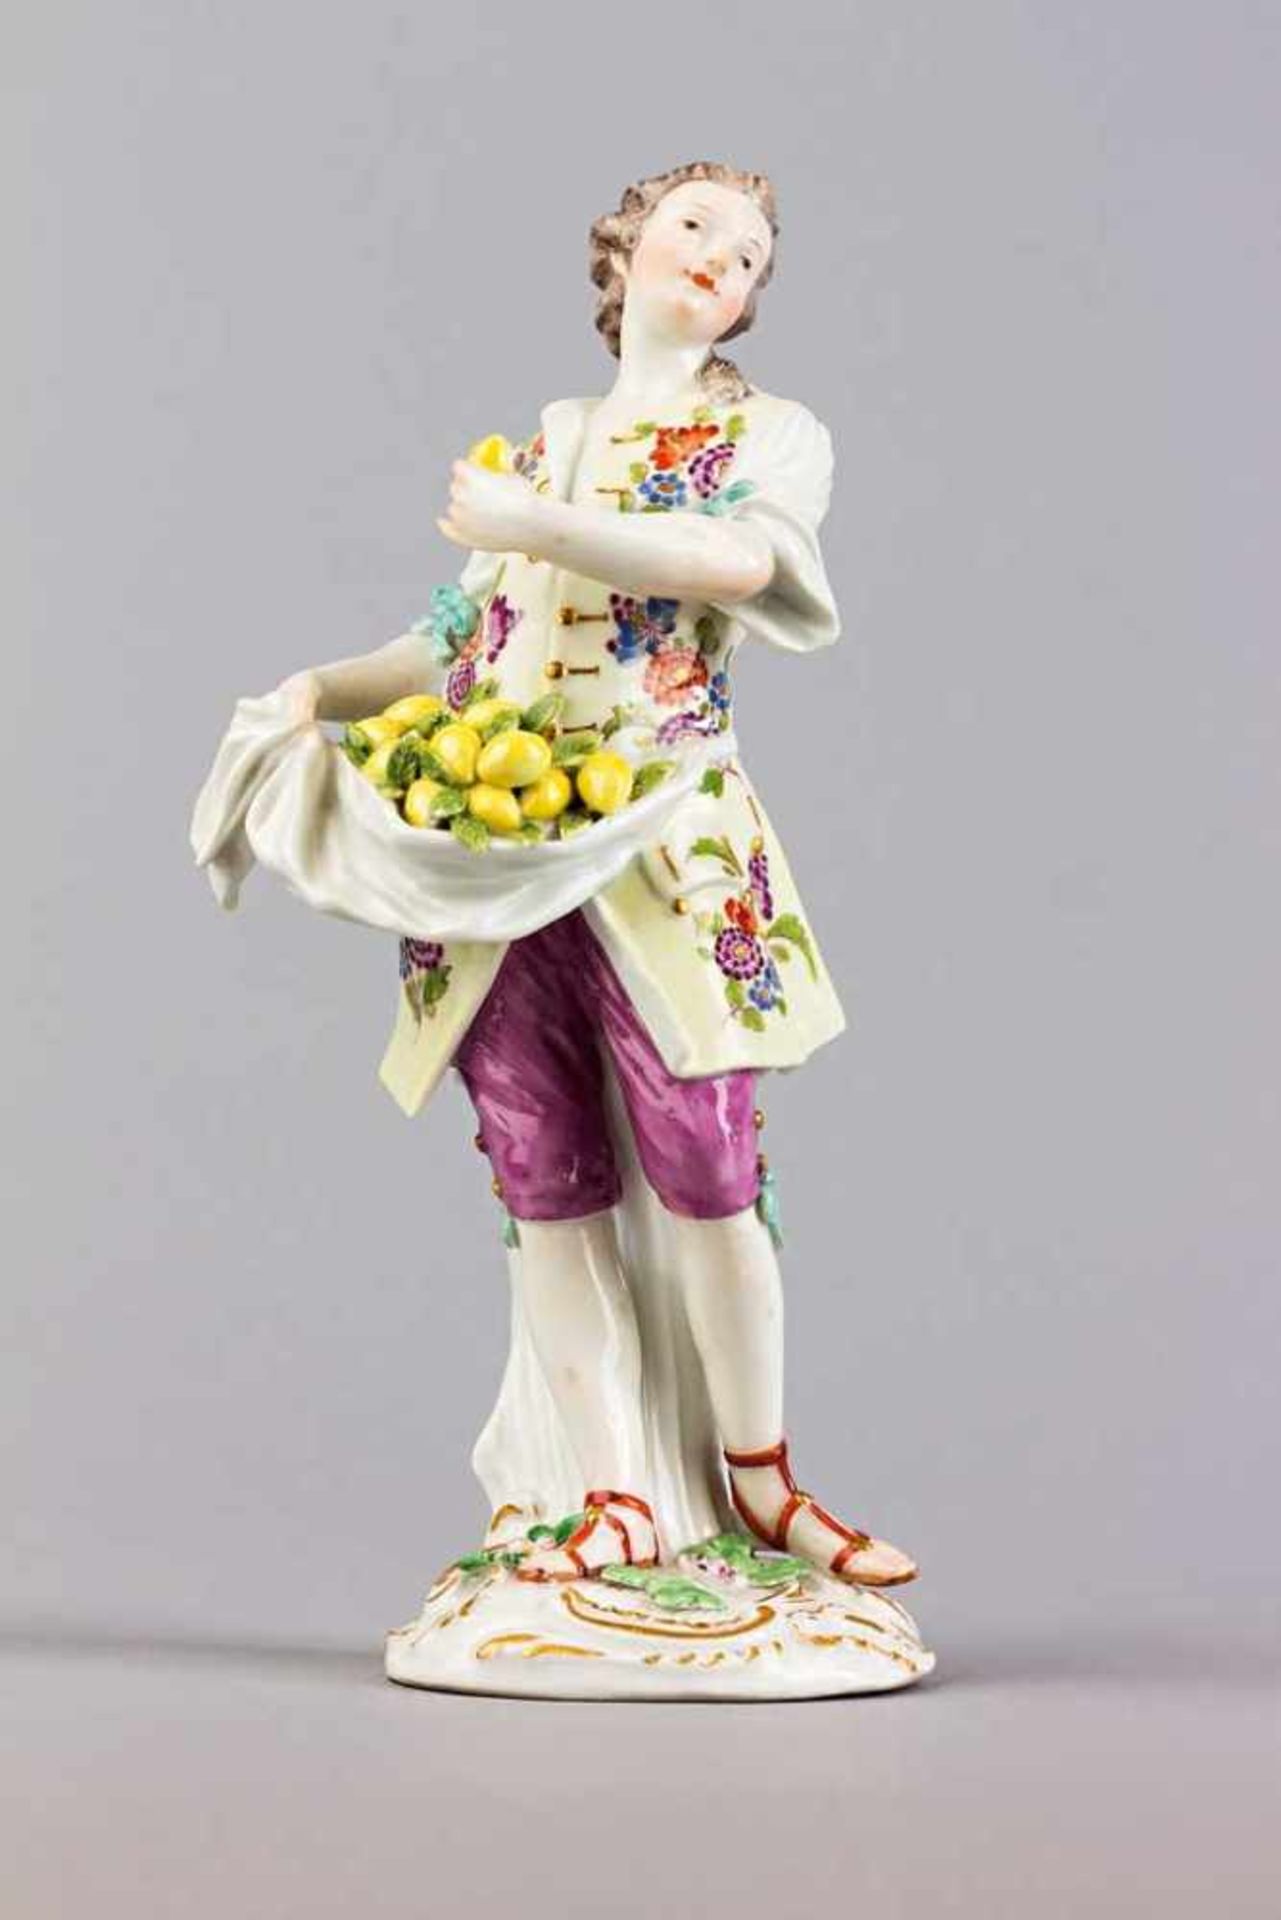 Zitronenhändler aus der Serie "Cris de Paris". Polychrom staffierte Figurine auf Rocaillensockel.